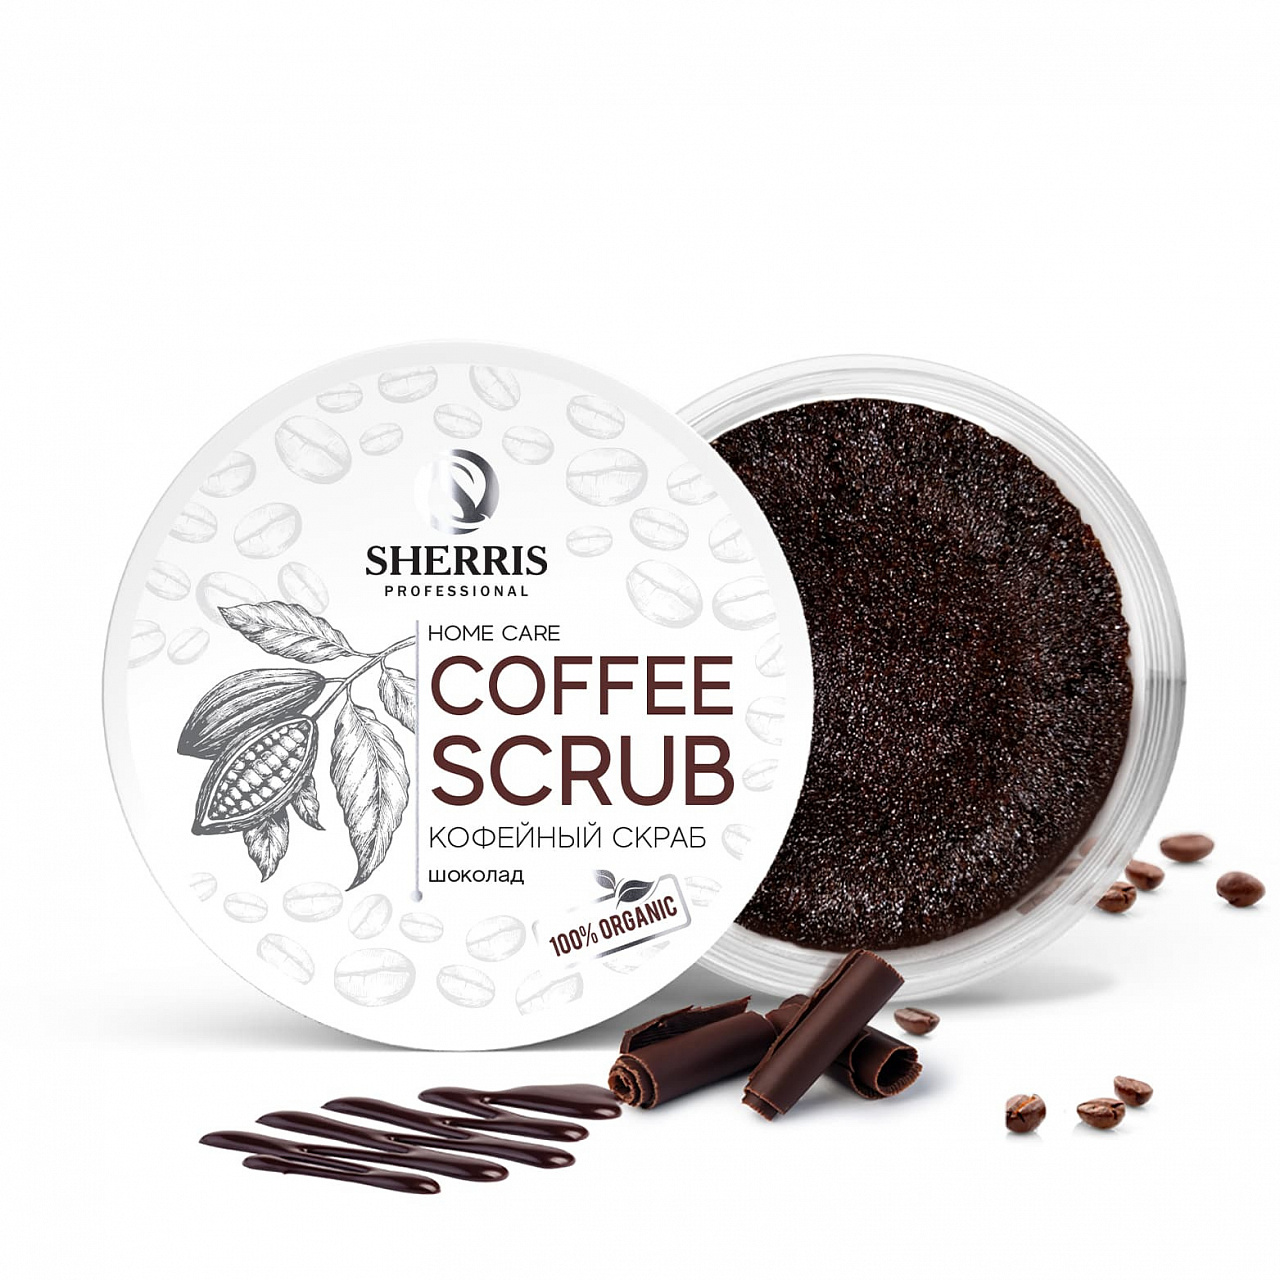 Кофейный скраб для тела SHERRIS шоколад, 200 гр roko антицеллюлитный скраб для тела кофе и шоколад с цитрусом 250